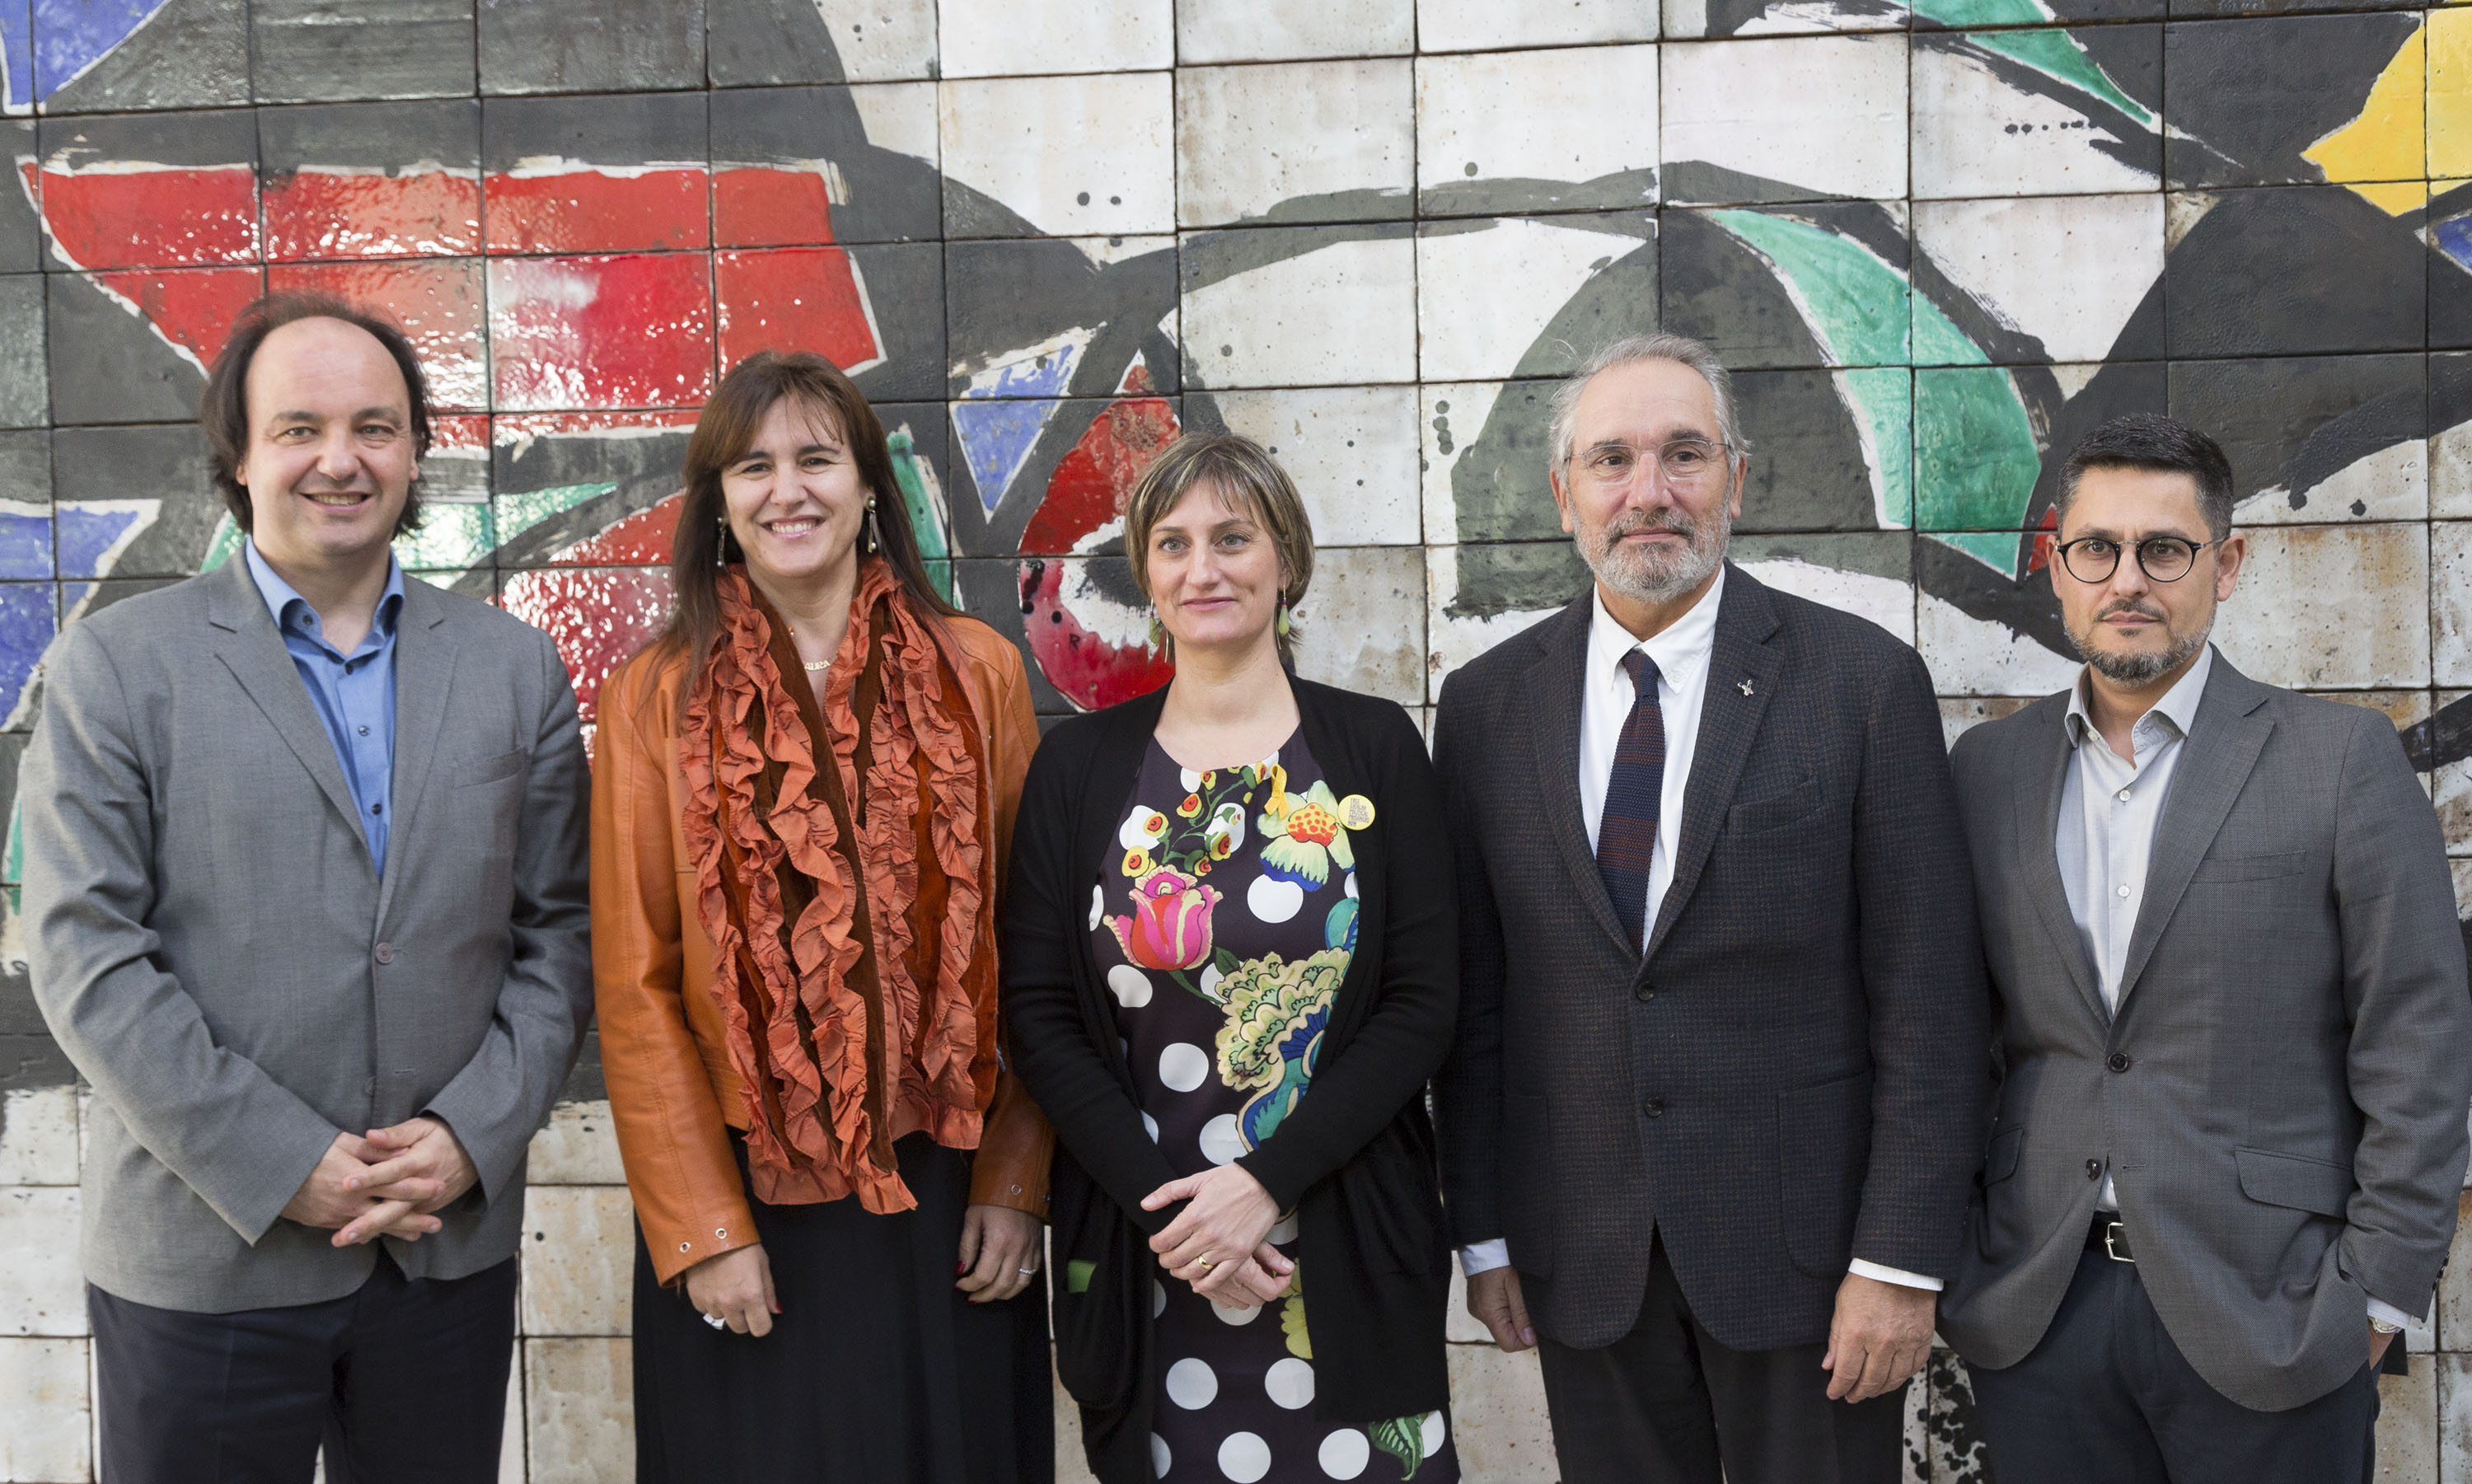 La consellera de Salut, Alba Vergés, i la consellera de Cultura, Laura Borràs, presenten el conveni subscrit entre Vall d'Hebron i el Museu Nacional per desenvolupar diferents accions destinades a millorar la salut de pacients i familiars